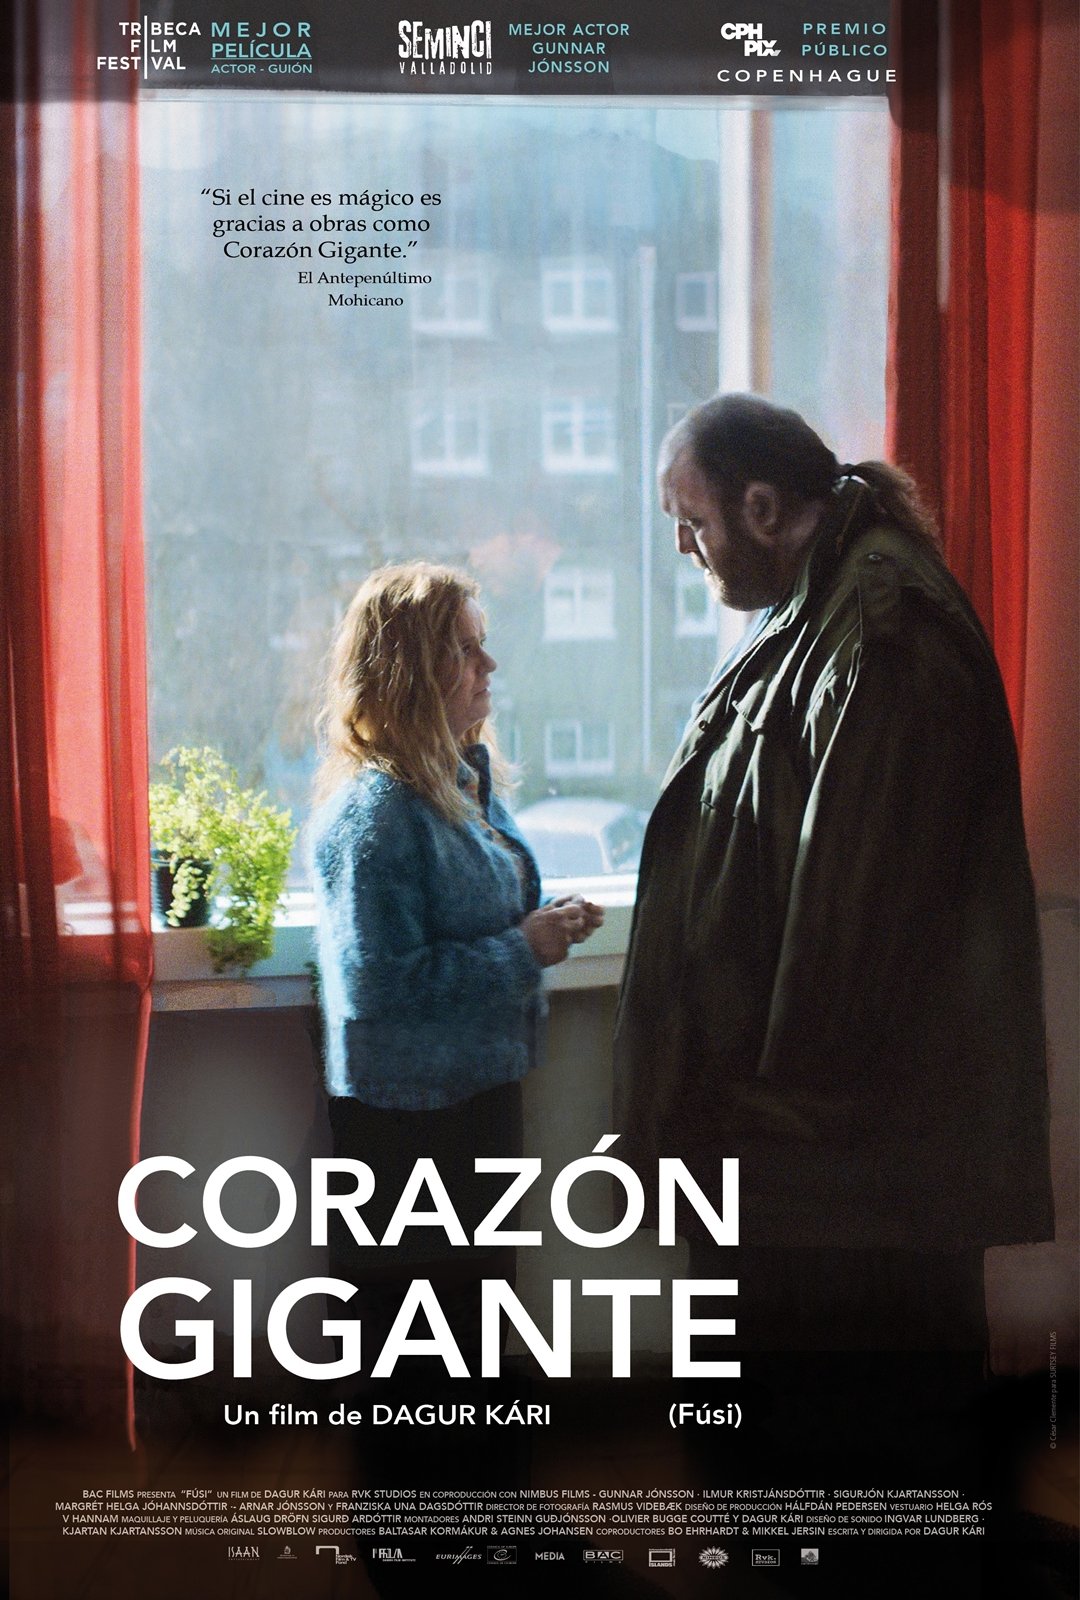 Corazón gigante (Fusi) - Película 2015 - SensaCine.com